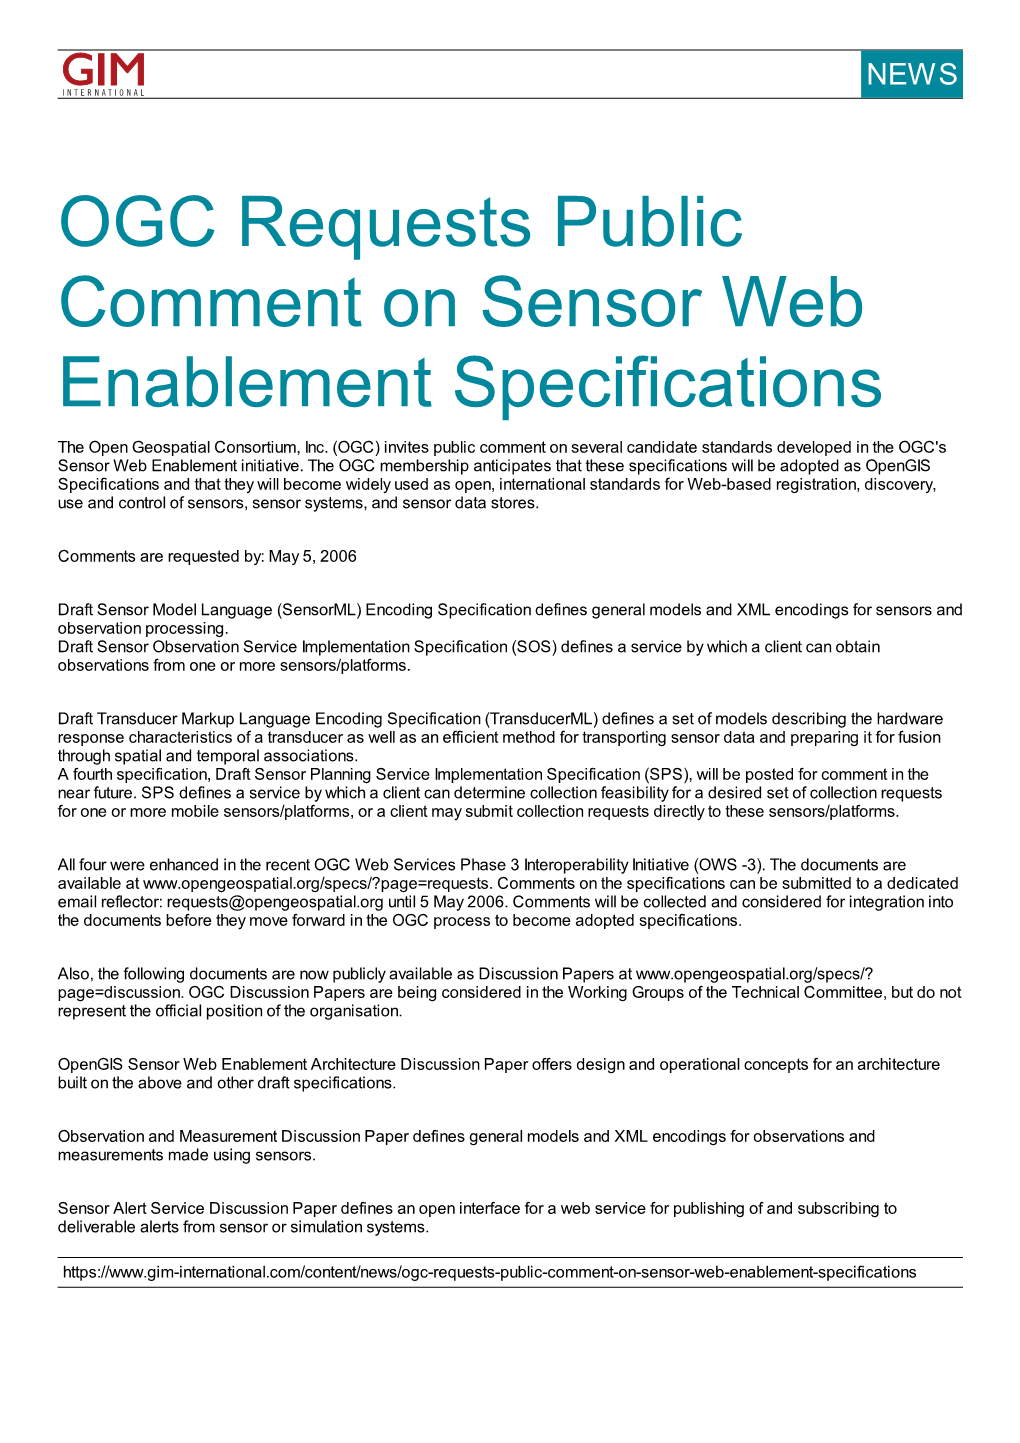 OGC Requests Public Comment on Sensor Web Enablement Specifications